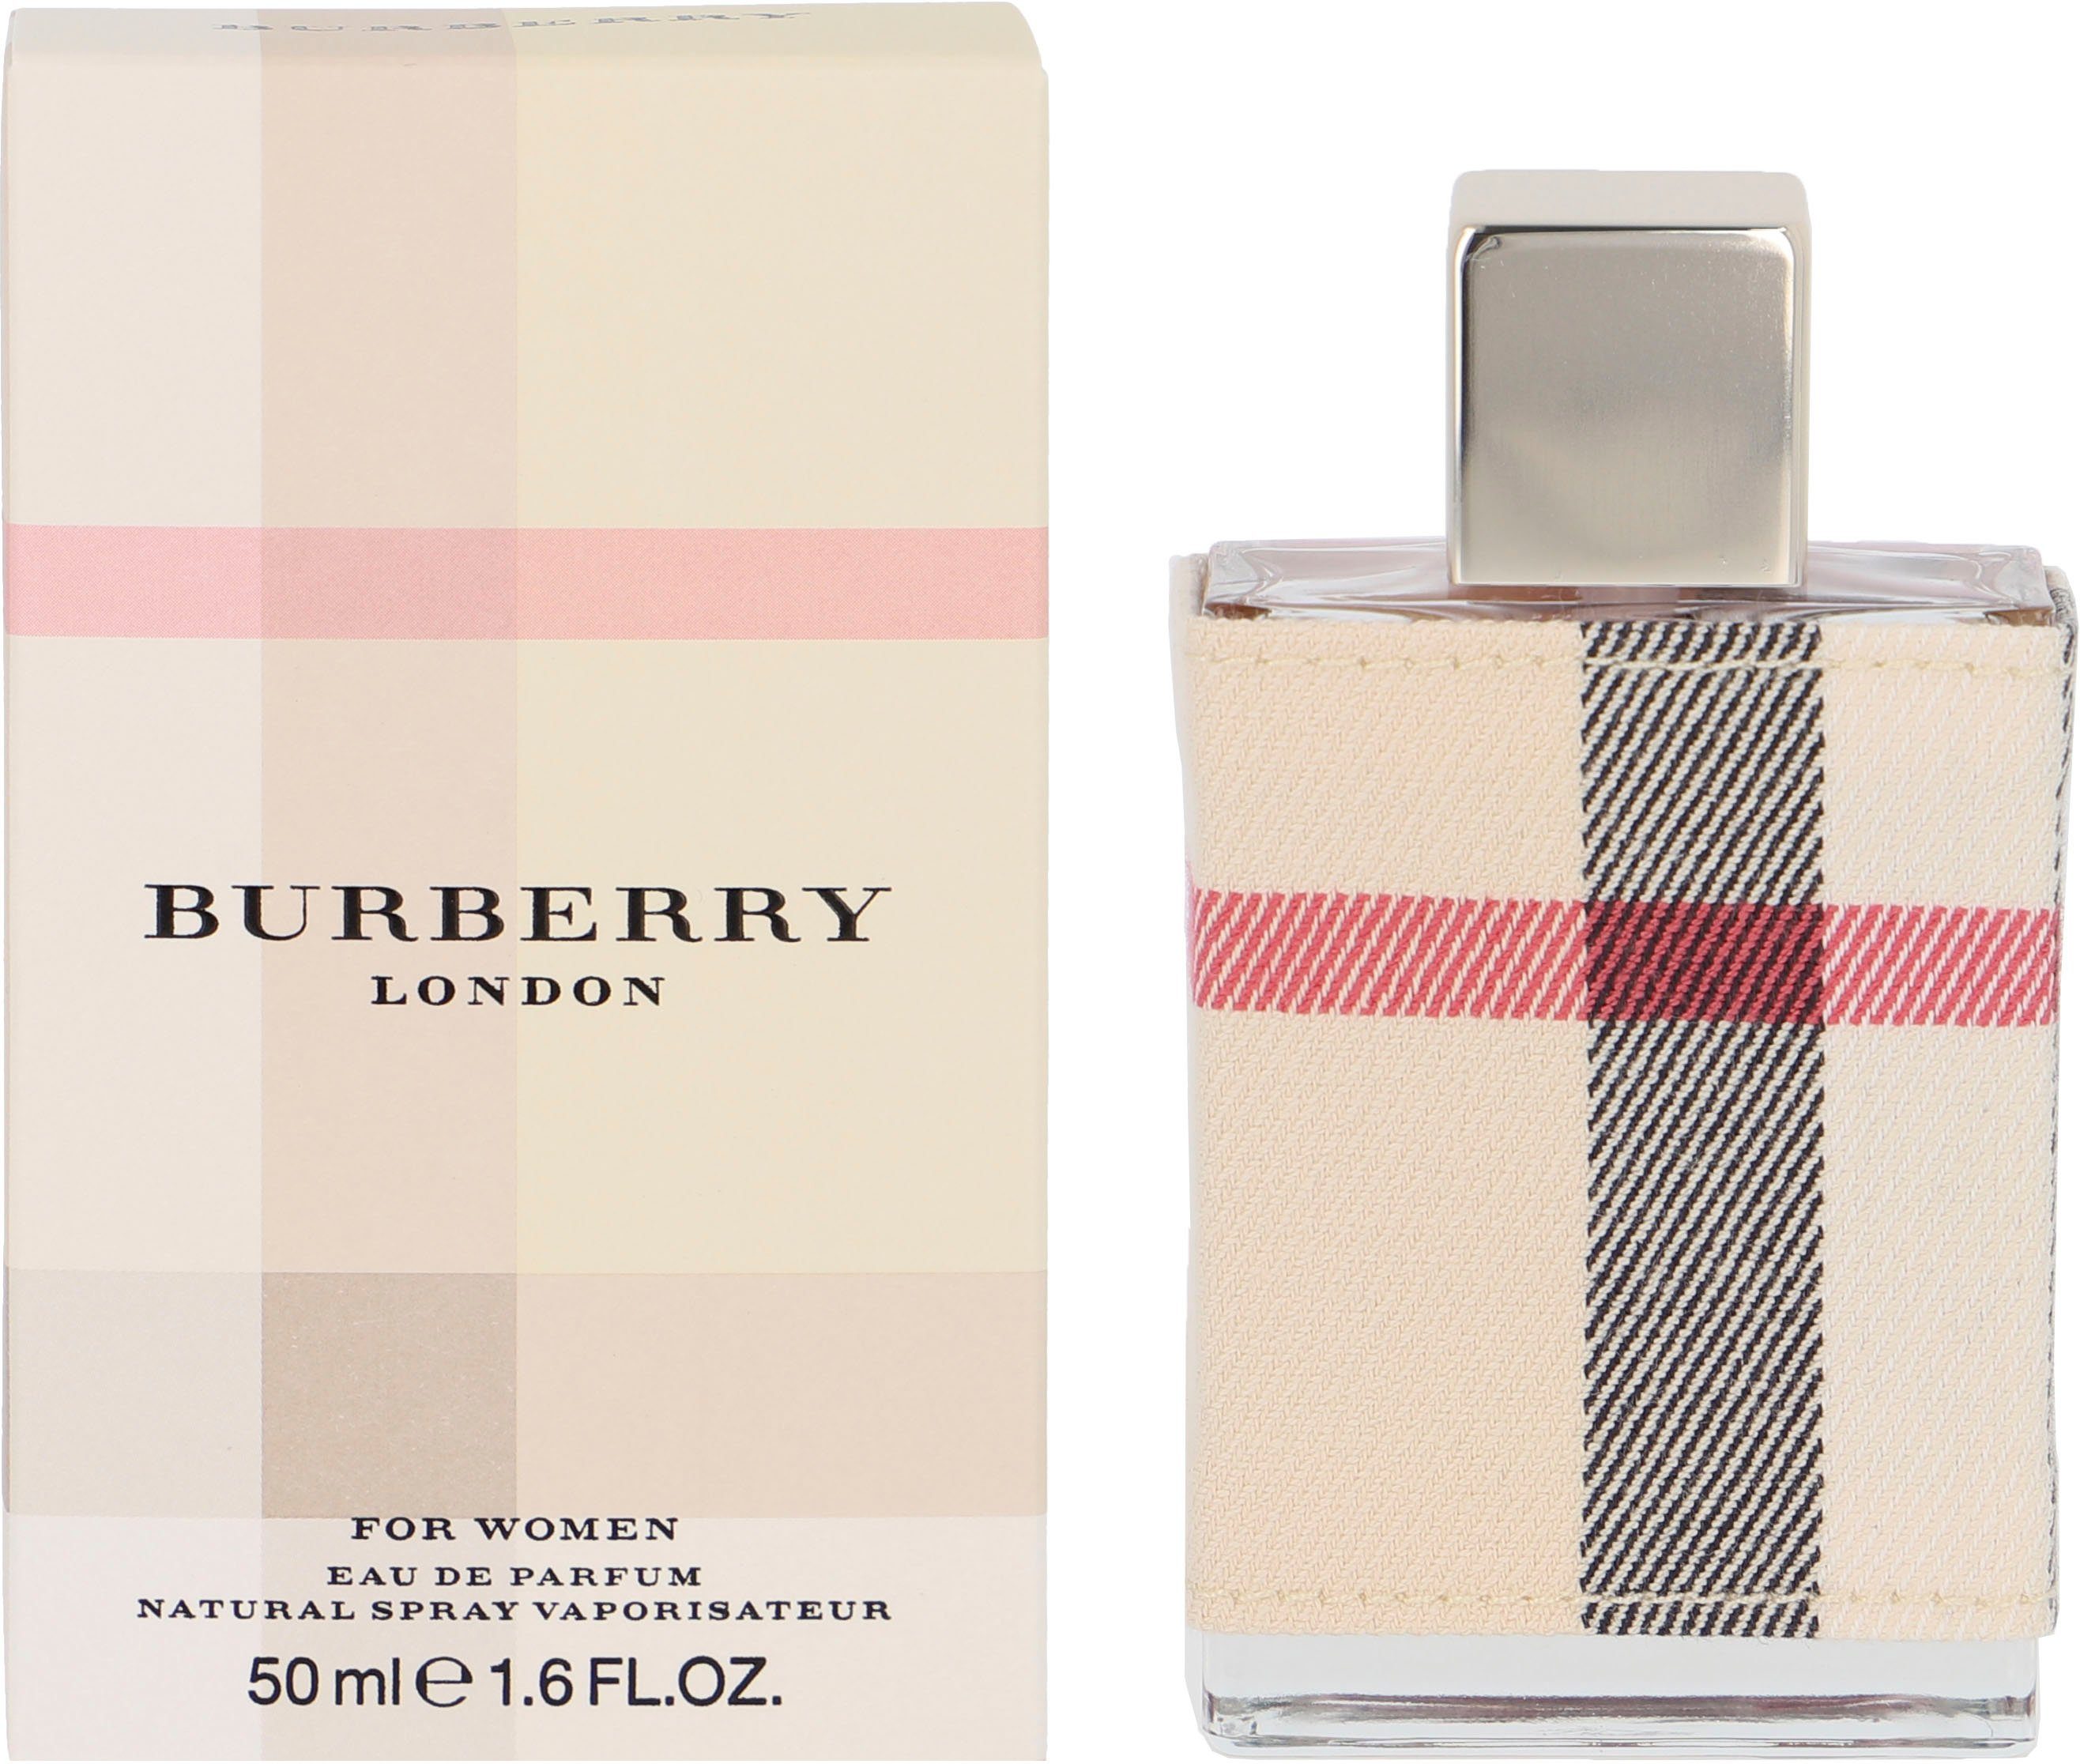 BURBERRY Eau Parfum de London